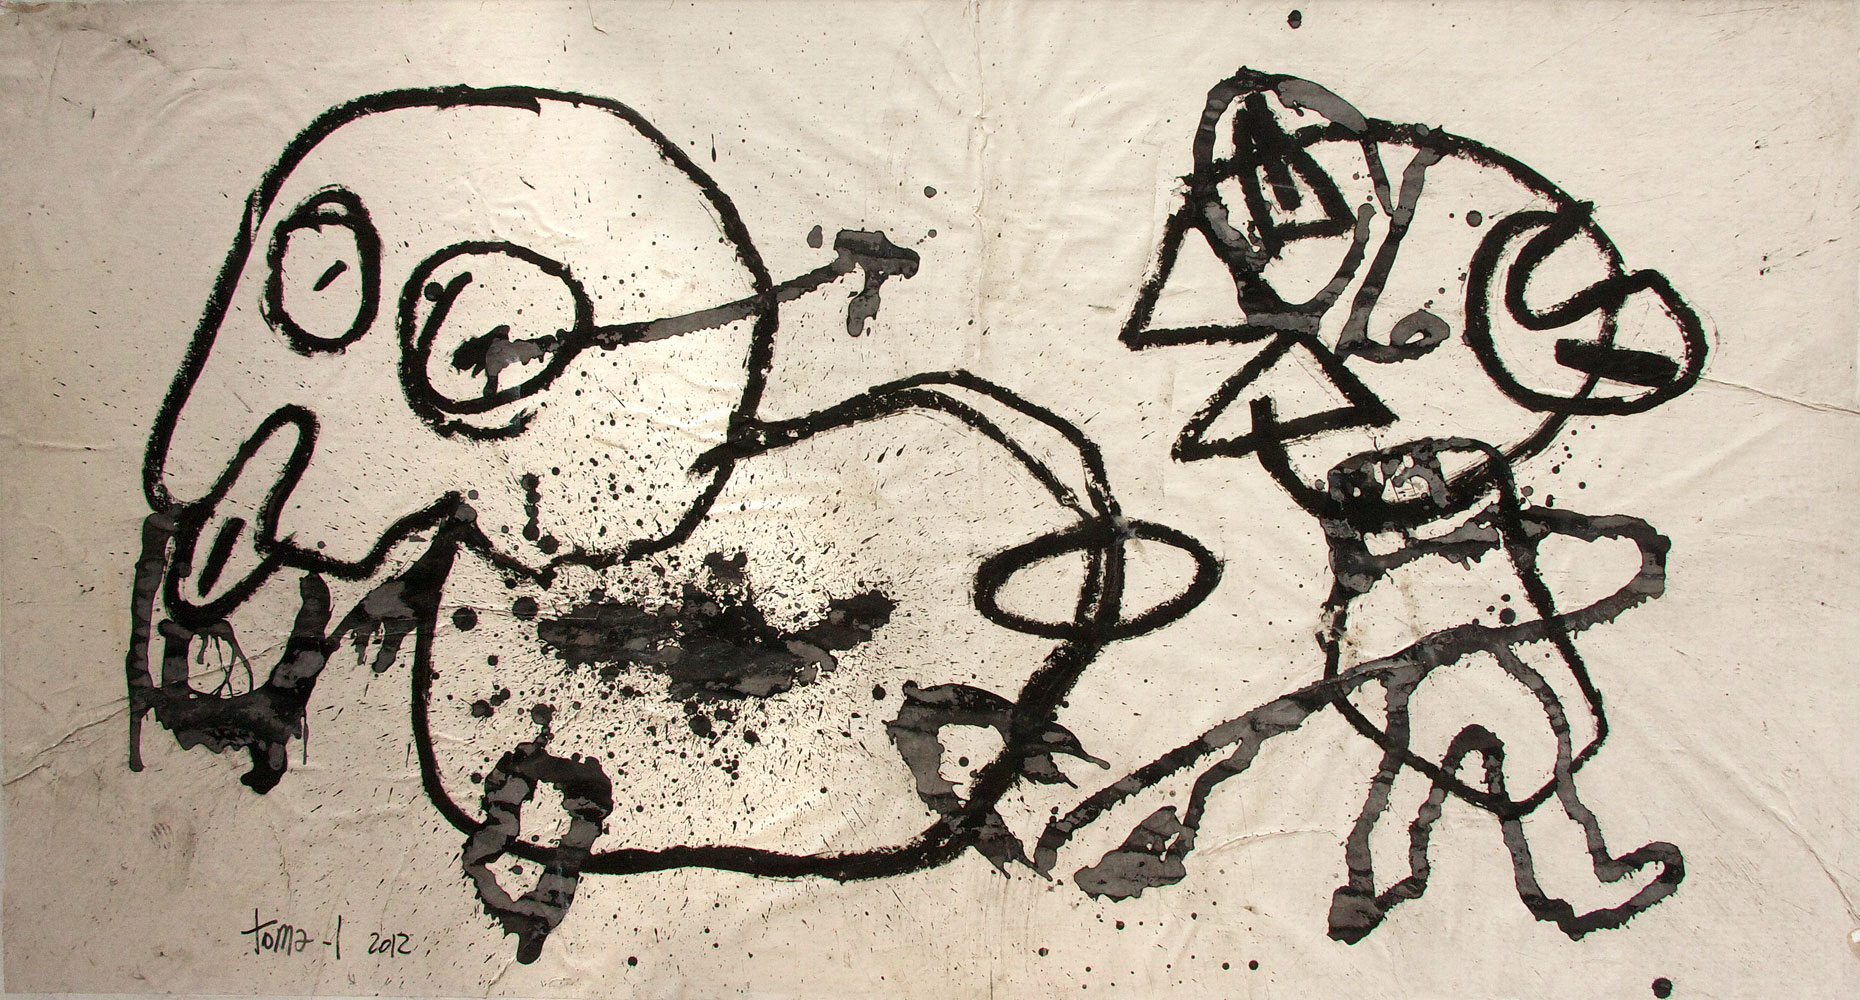 Drawing Black 2012 Dessin à l'encre de chine contre collé sur toile.171x100 cm
© Toma-L